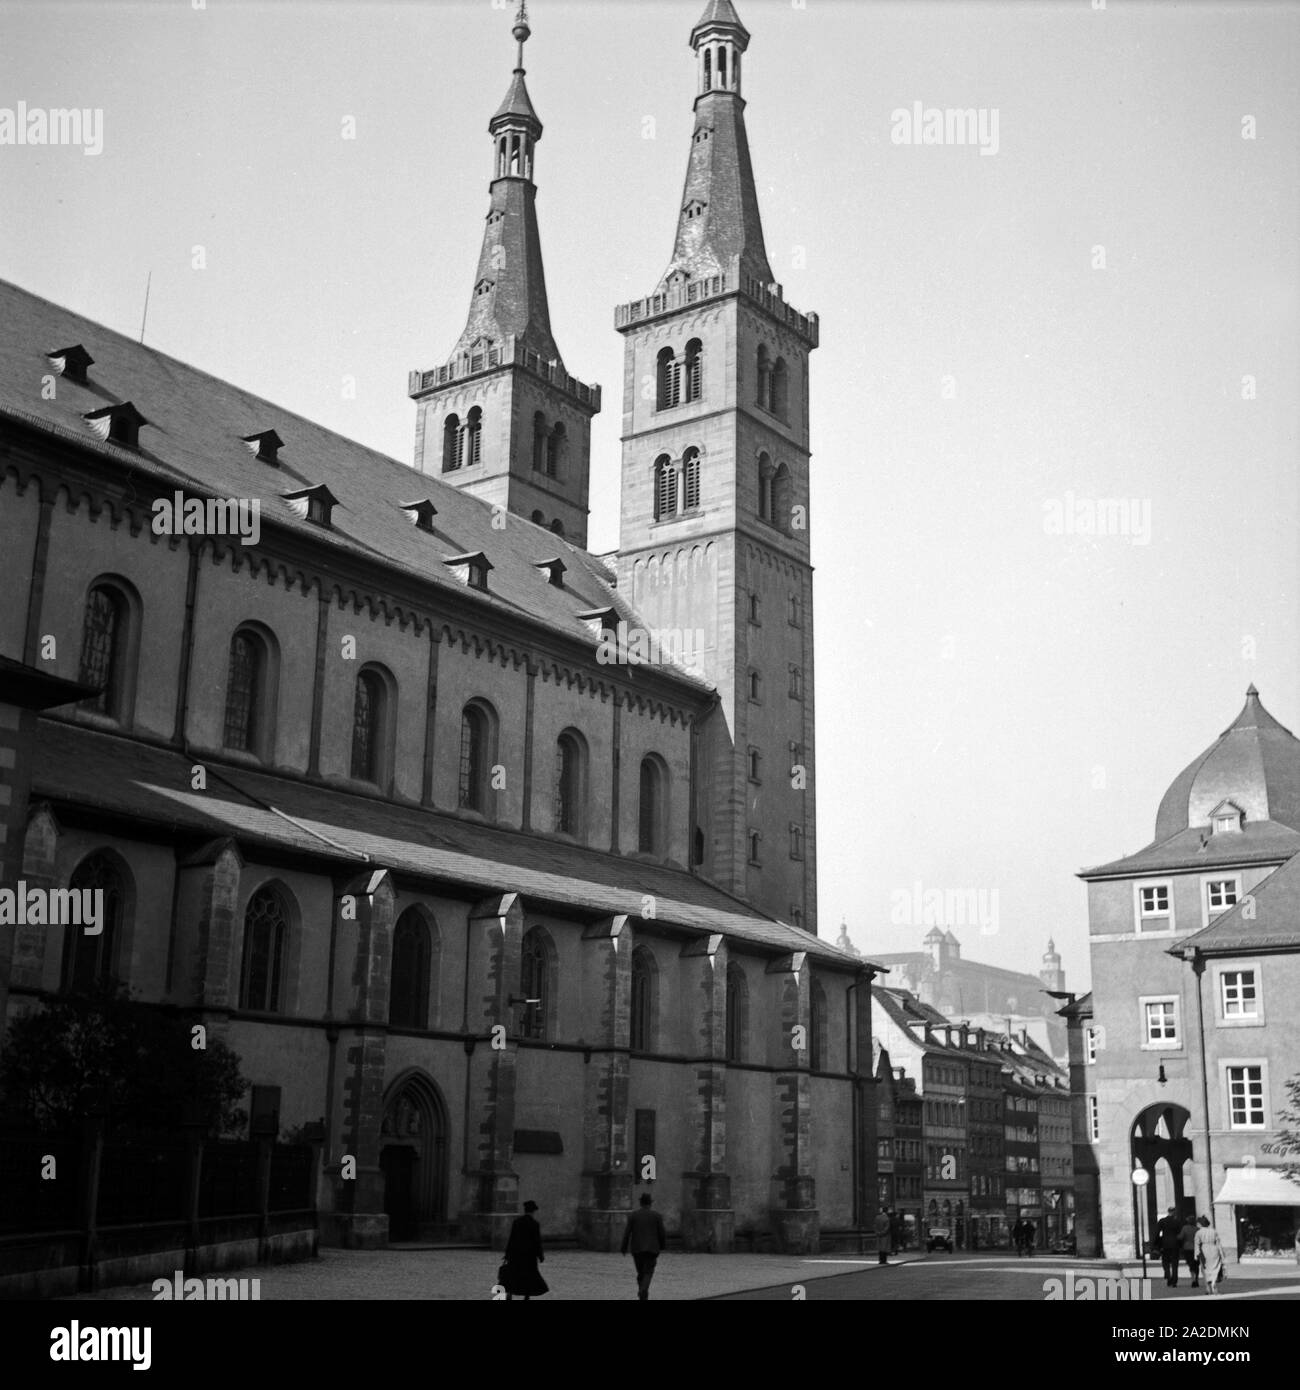 Blick von Osten zur Westfassade des Domes zu Würzburg, Deutschland 1930er Jahre. Ansicht von Osten an die Westfront Wuerzburger Dom, Deutschland 1930. Stockfoto